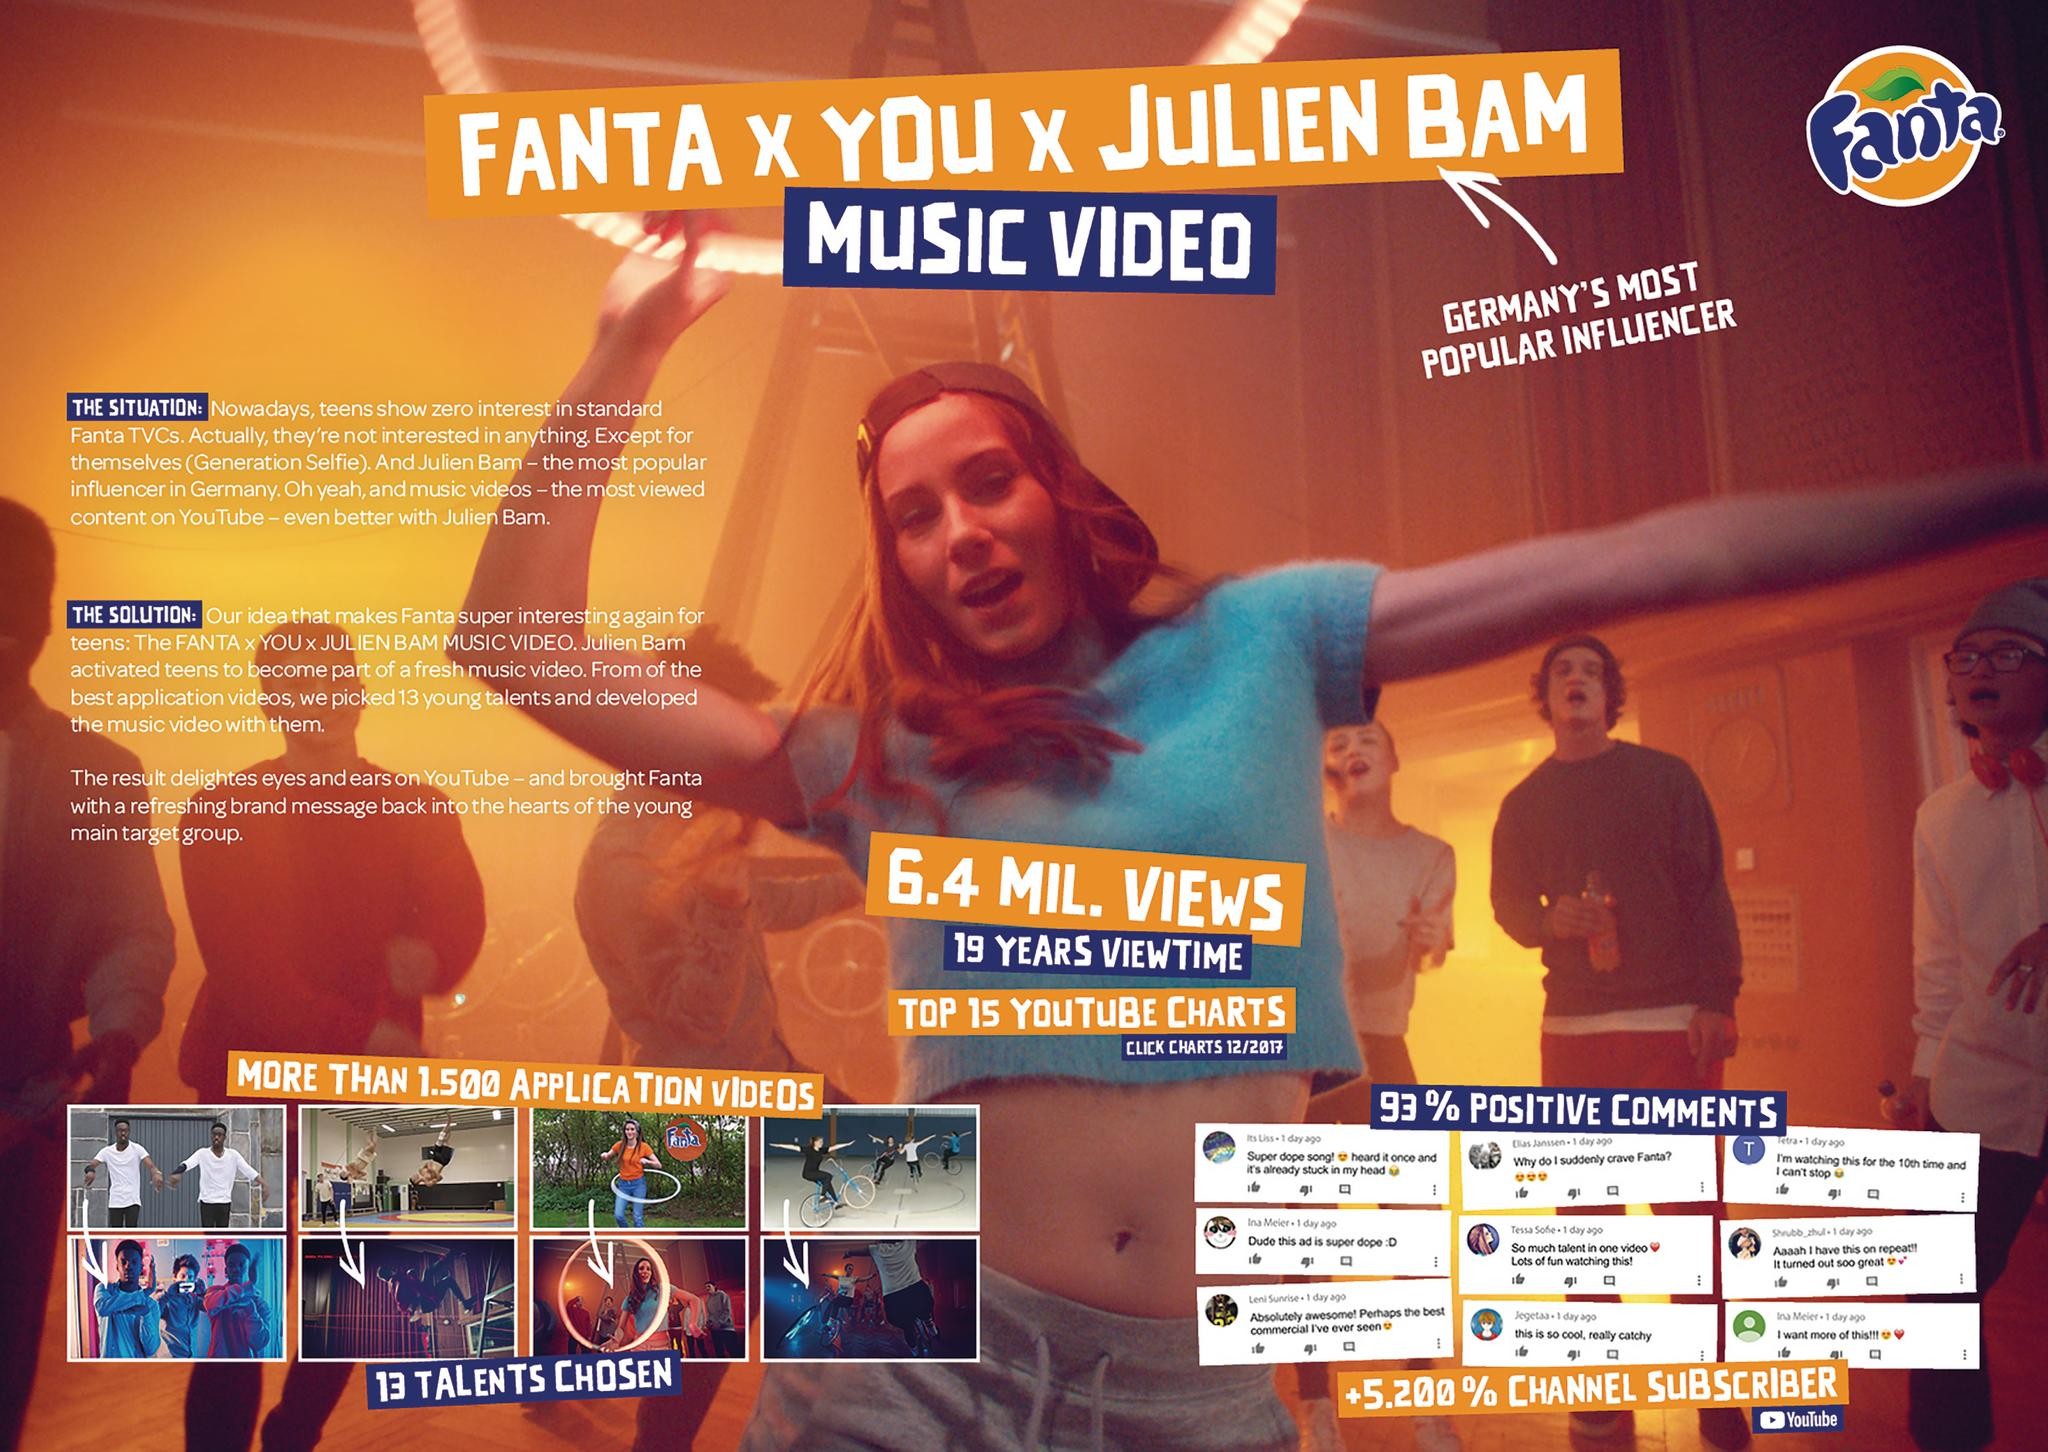 FANTA x YOU x JULIEN BAM MUSICVIDEO